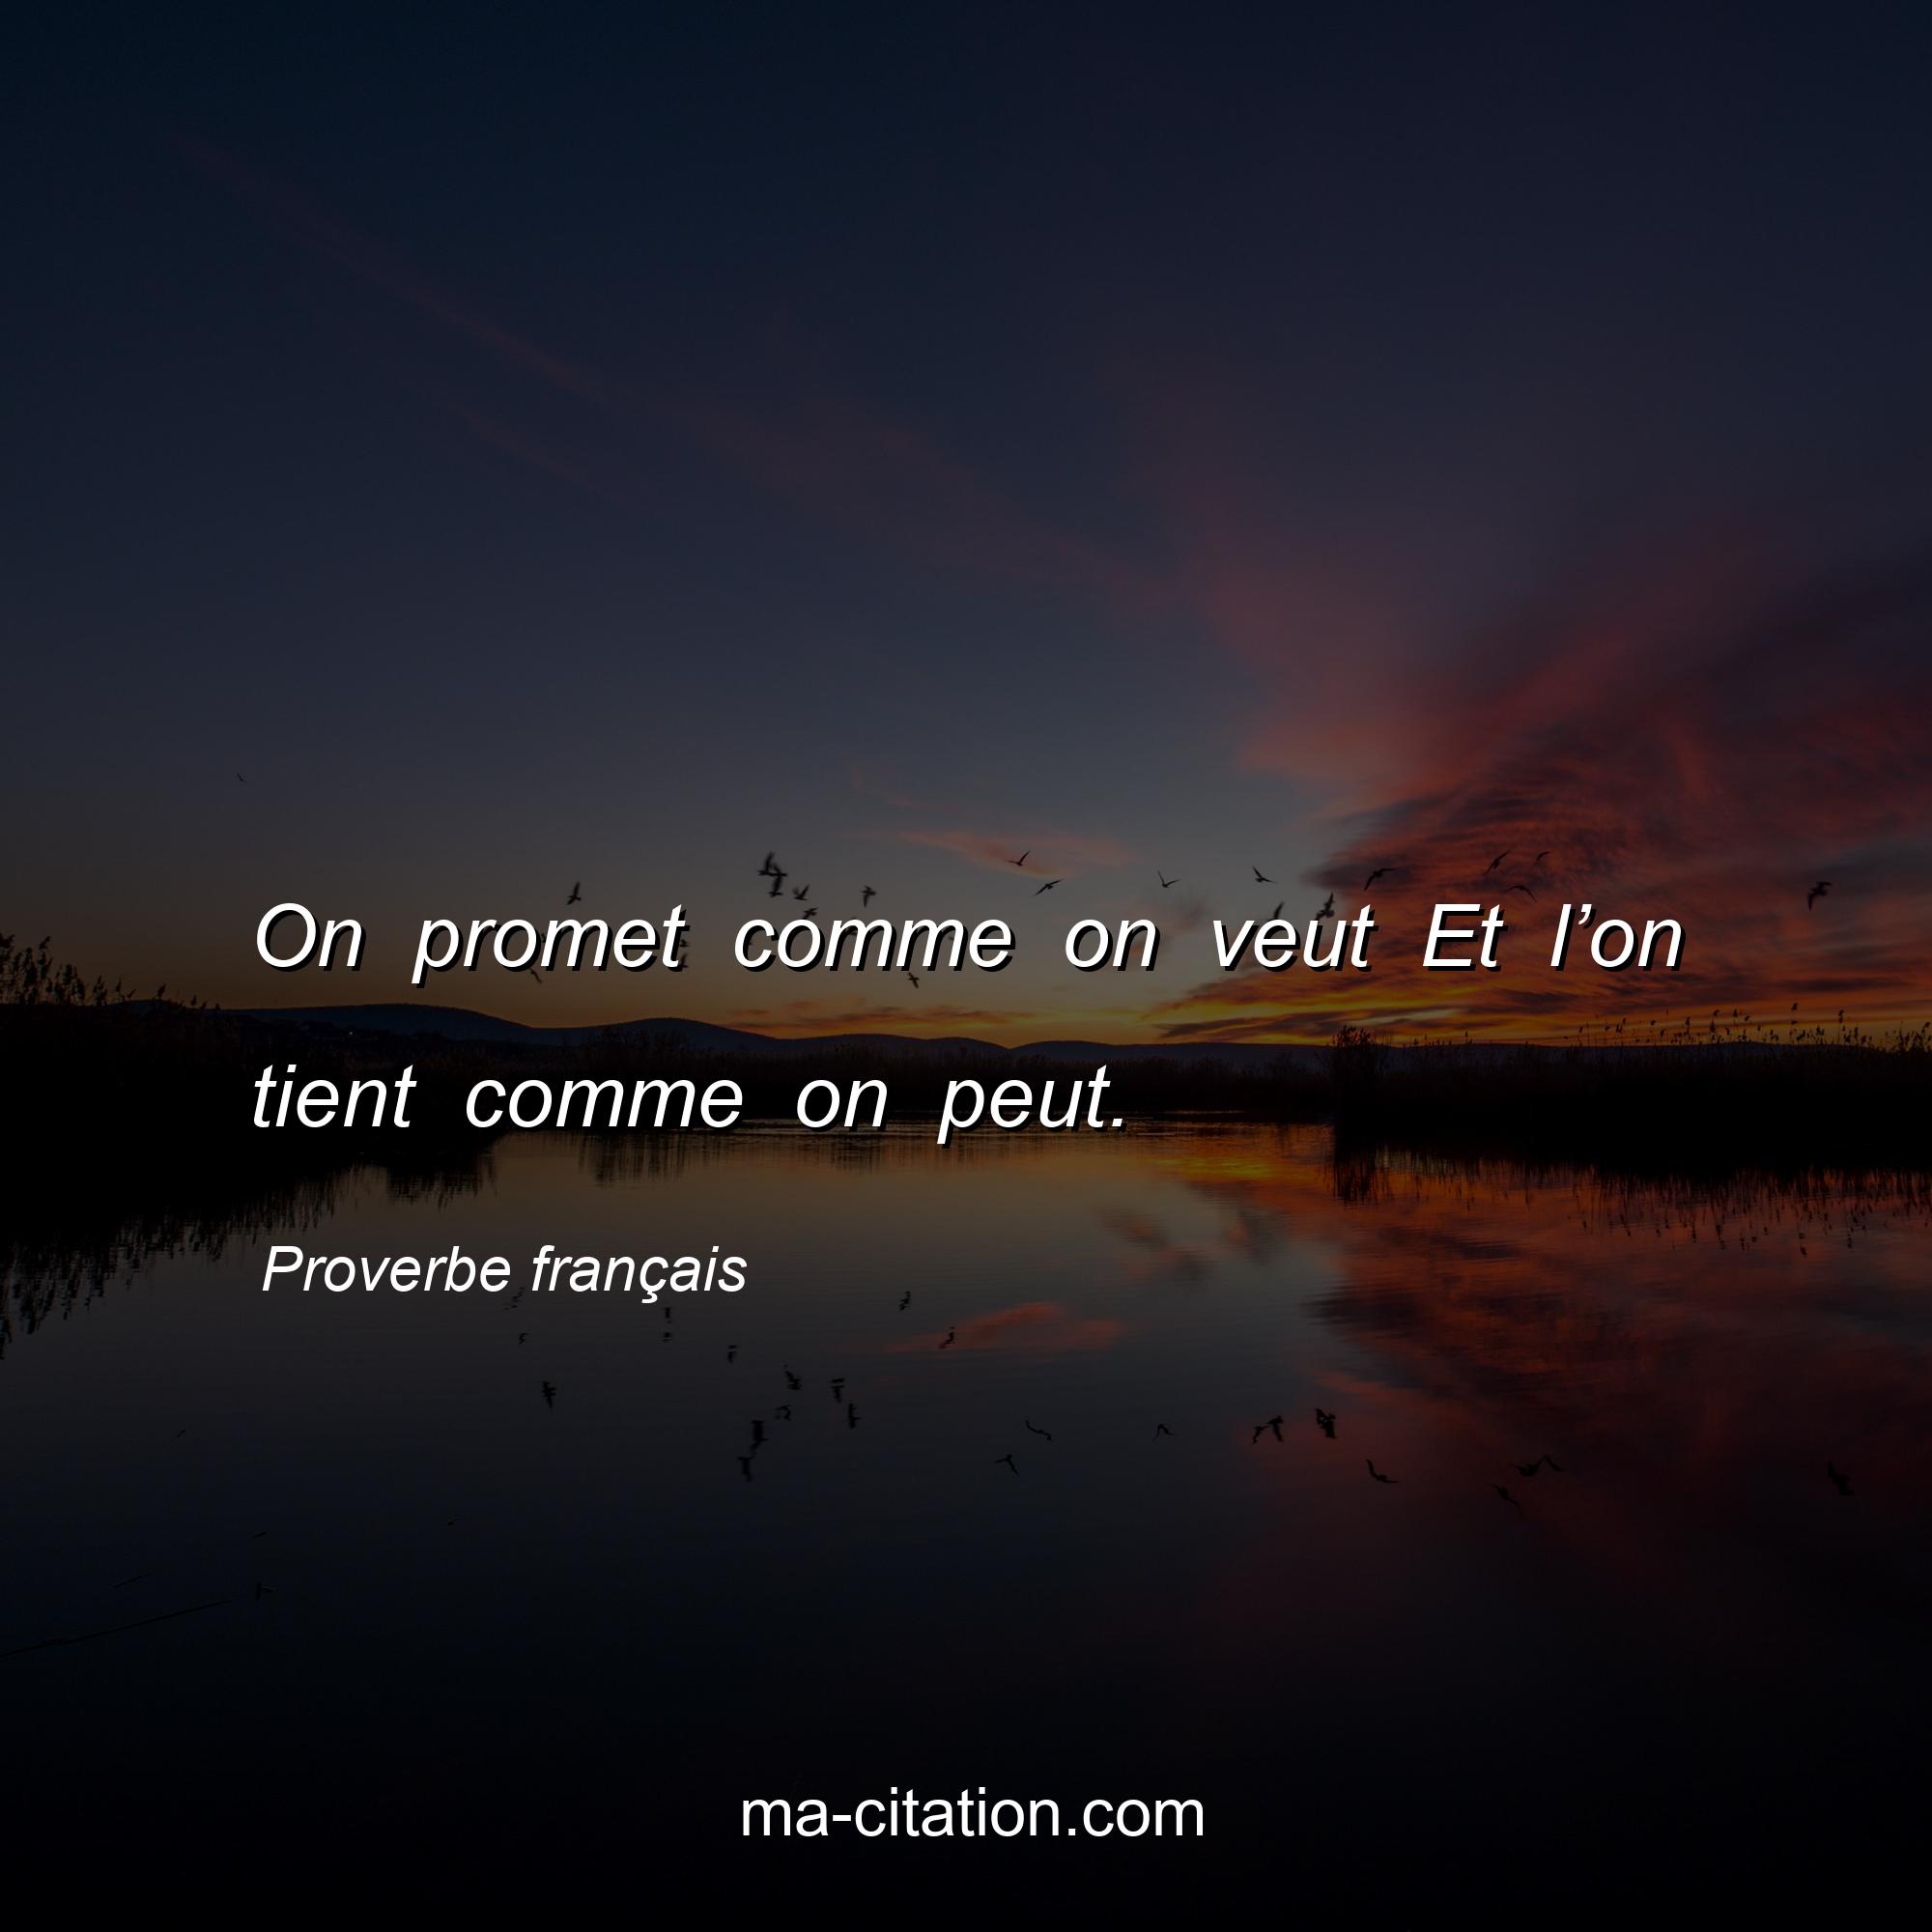 Proverbe français : On promet comme on veut Et l’on tient comme on peut.